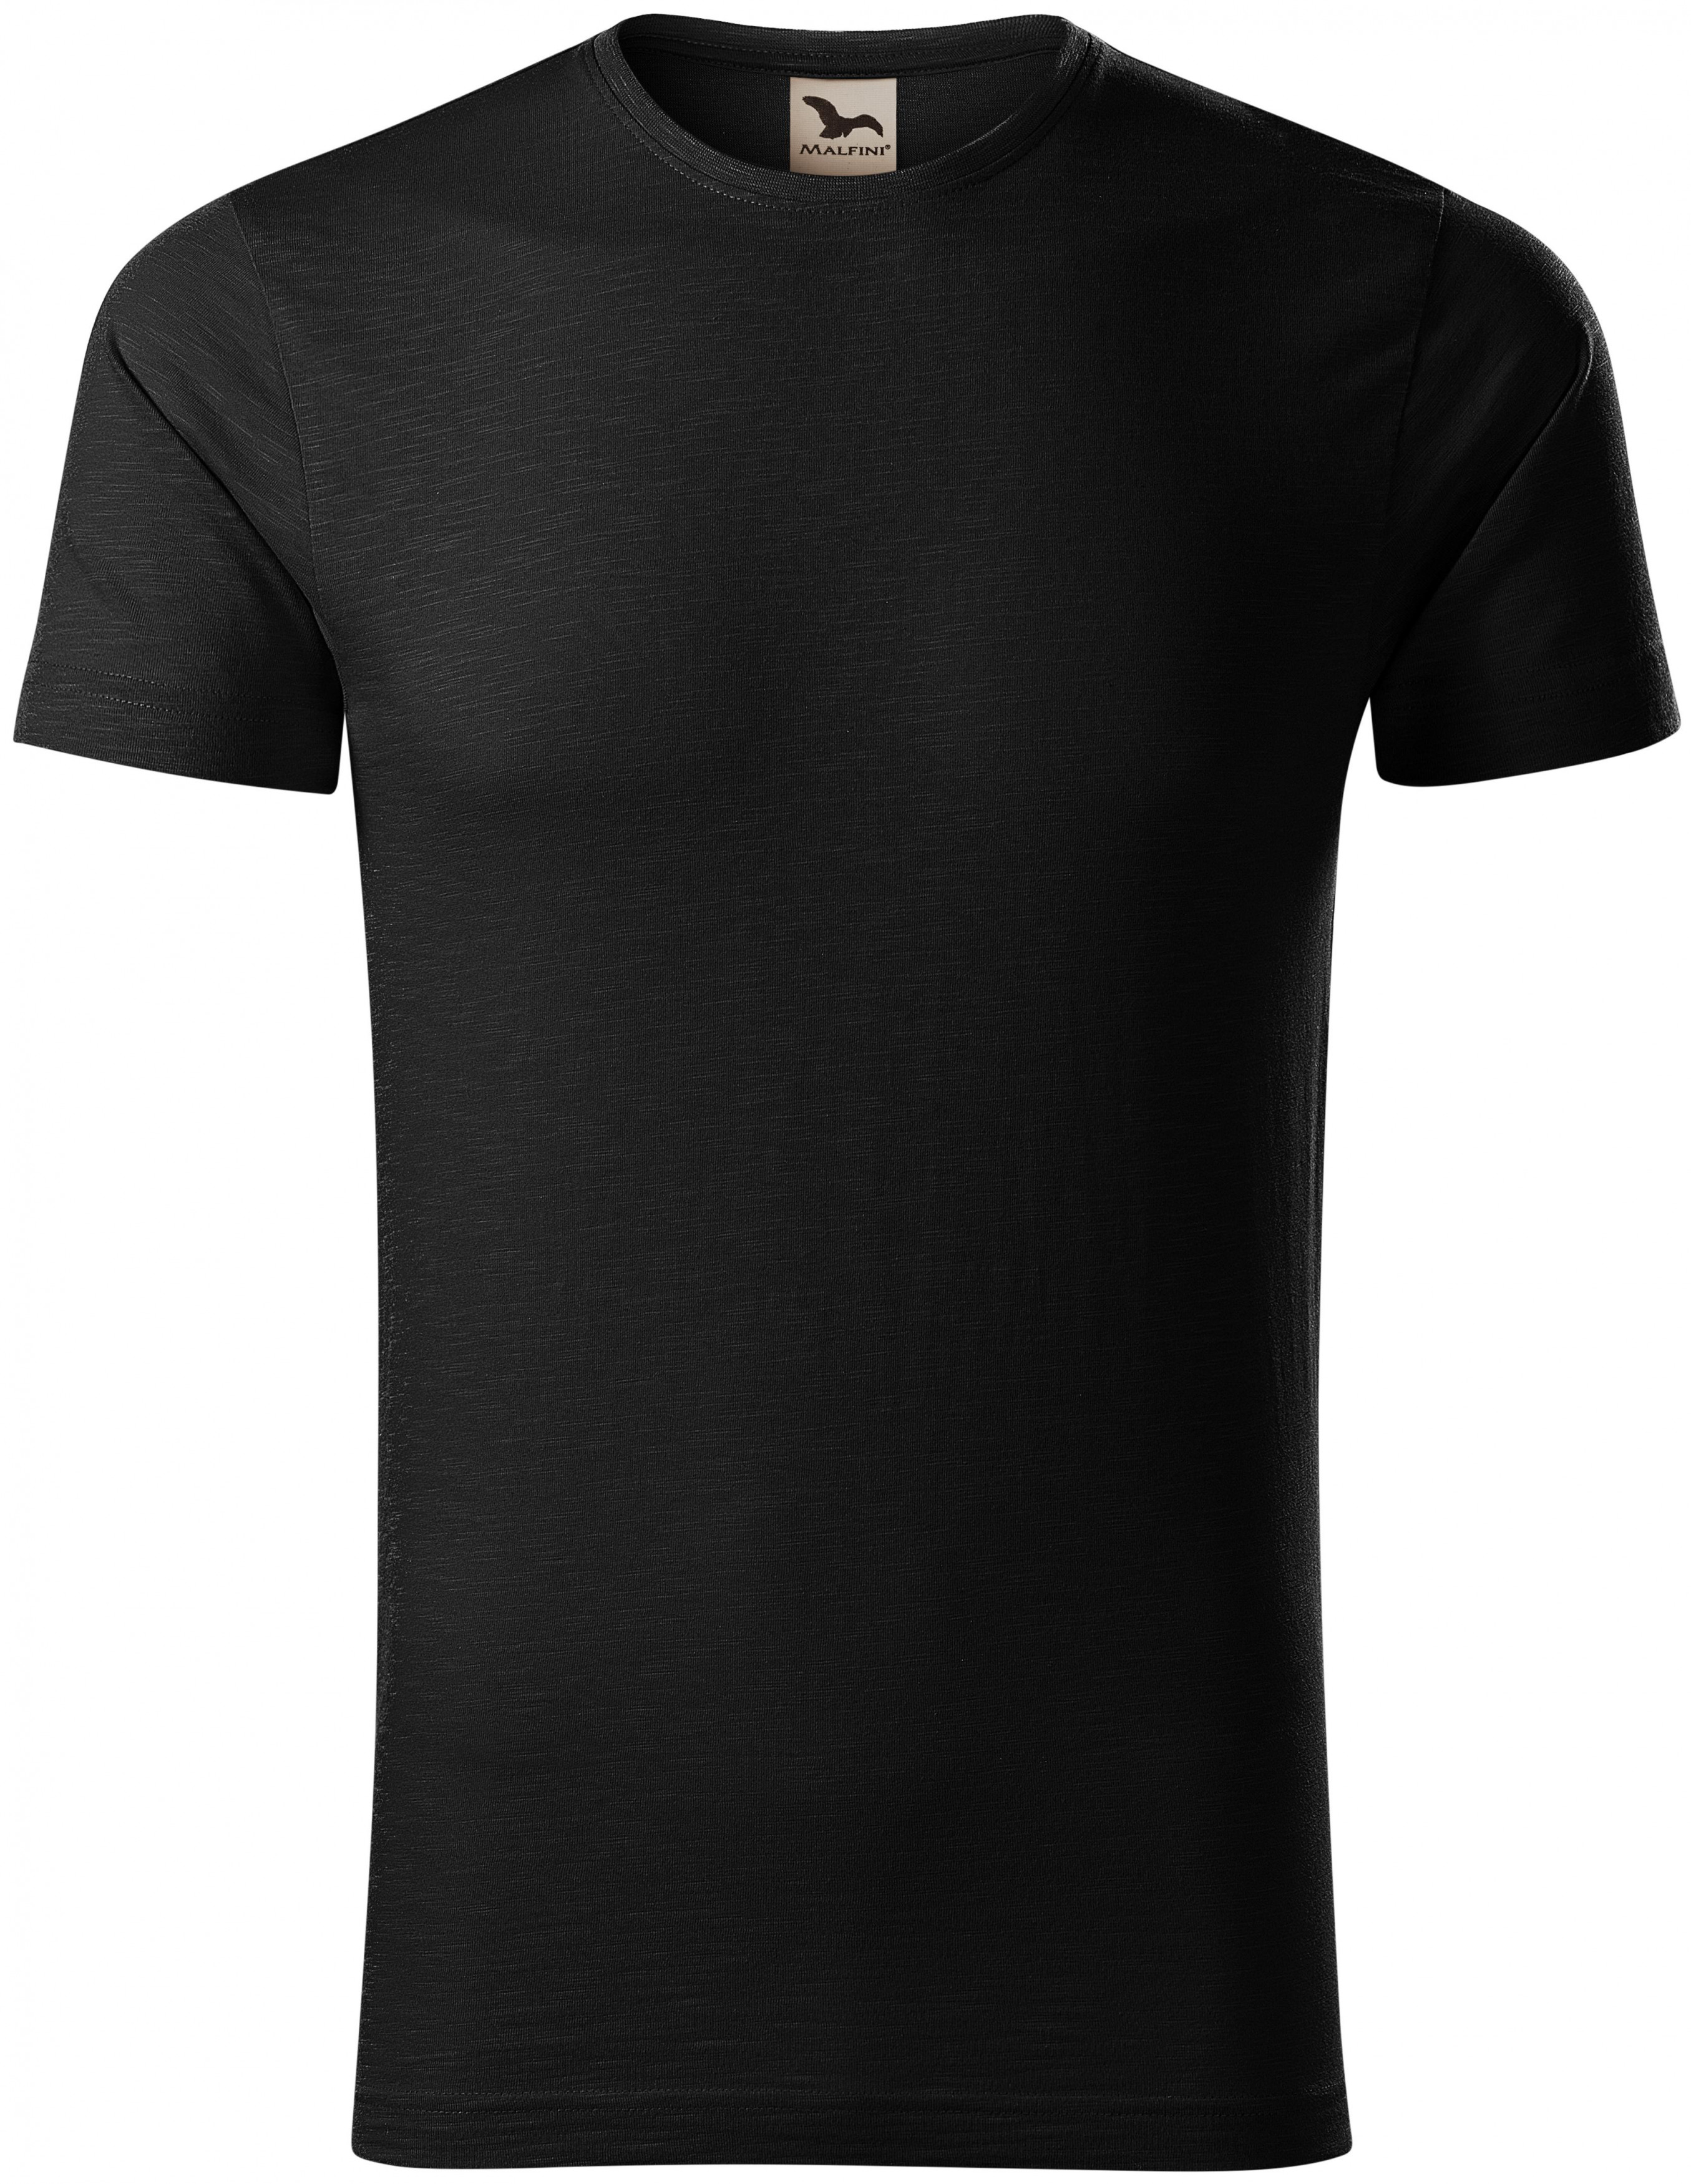 Pánske tričko, štruktúrovaná organická bavlna, čierna, XL